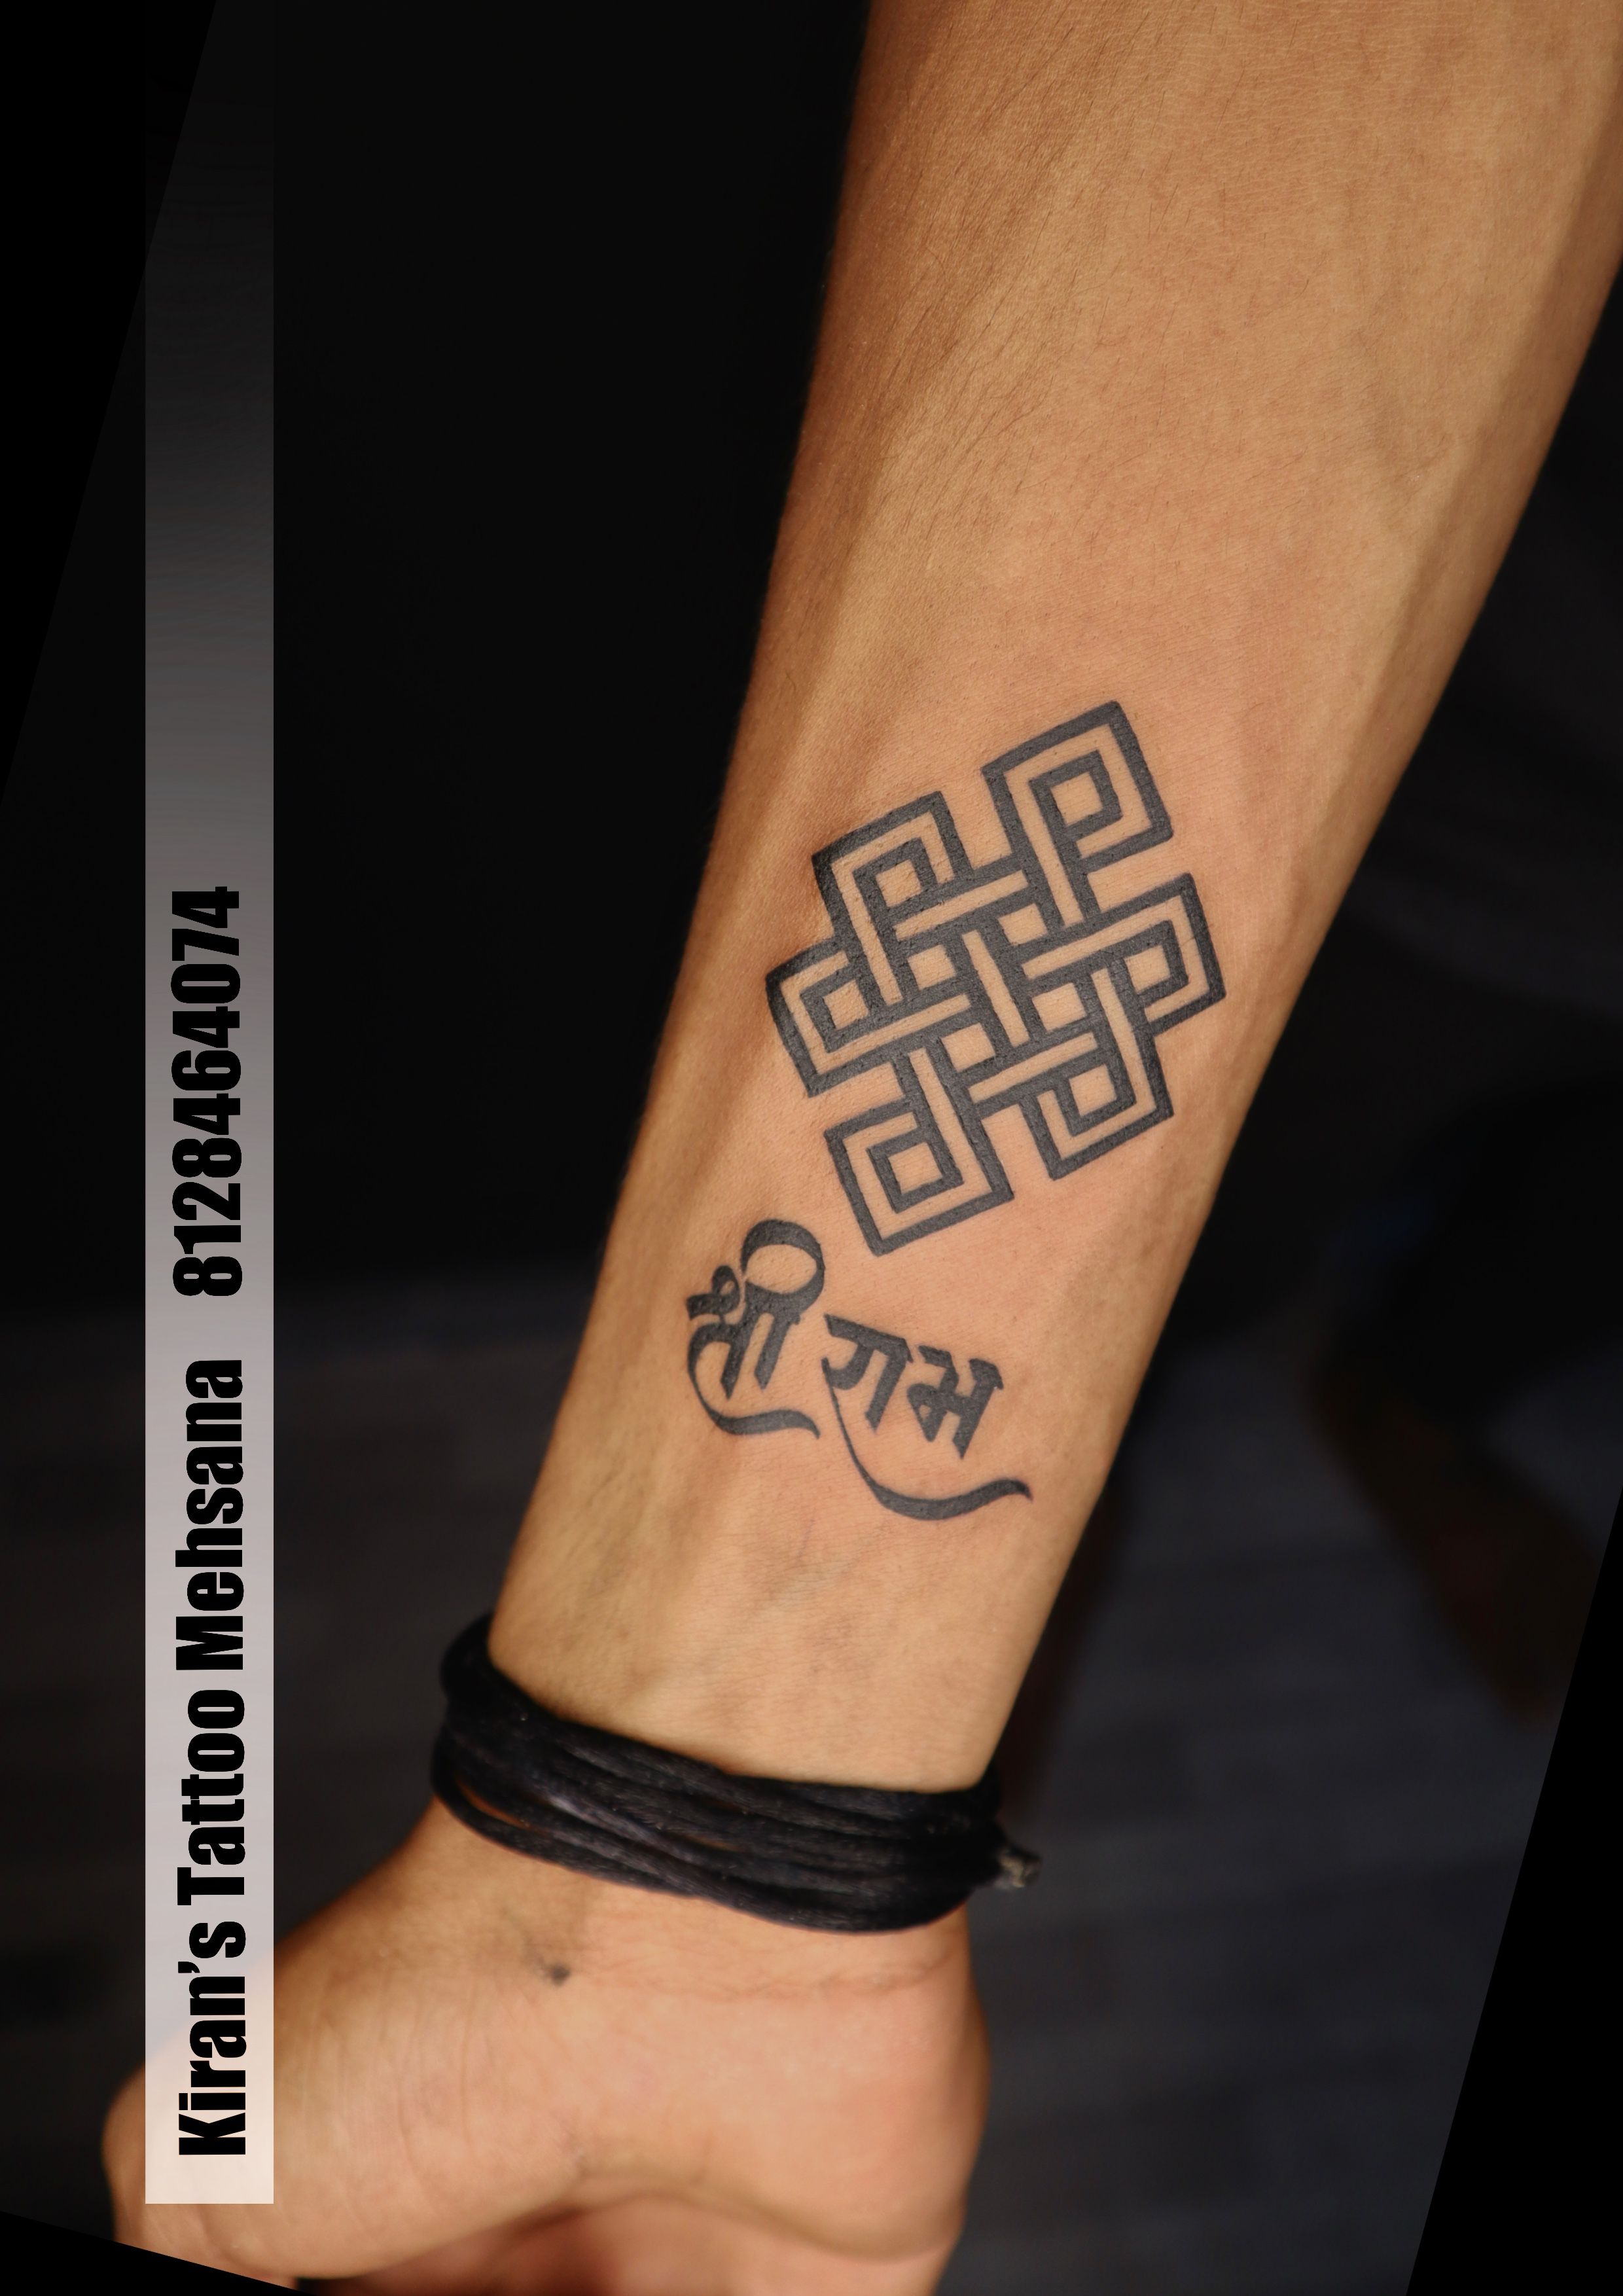 Tattoo uploaded by Get Ink'D by MANAV HUDDA • Karma Tattoo #manavhudda  #getinked #getinkd #karmatattoo • Tattoodo